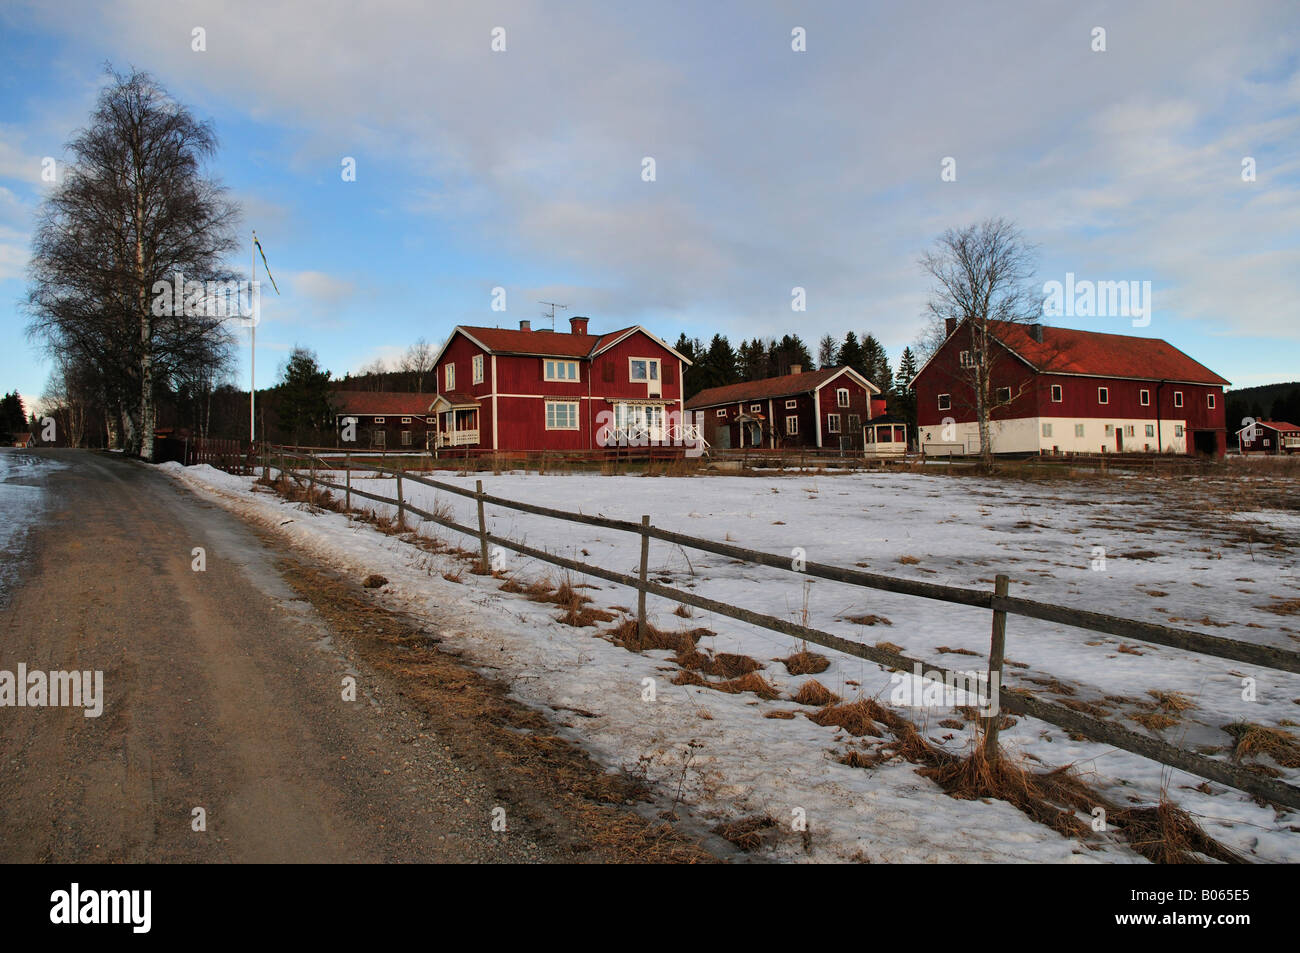 Village in Sweden Stock Photo